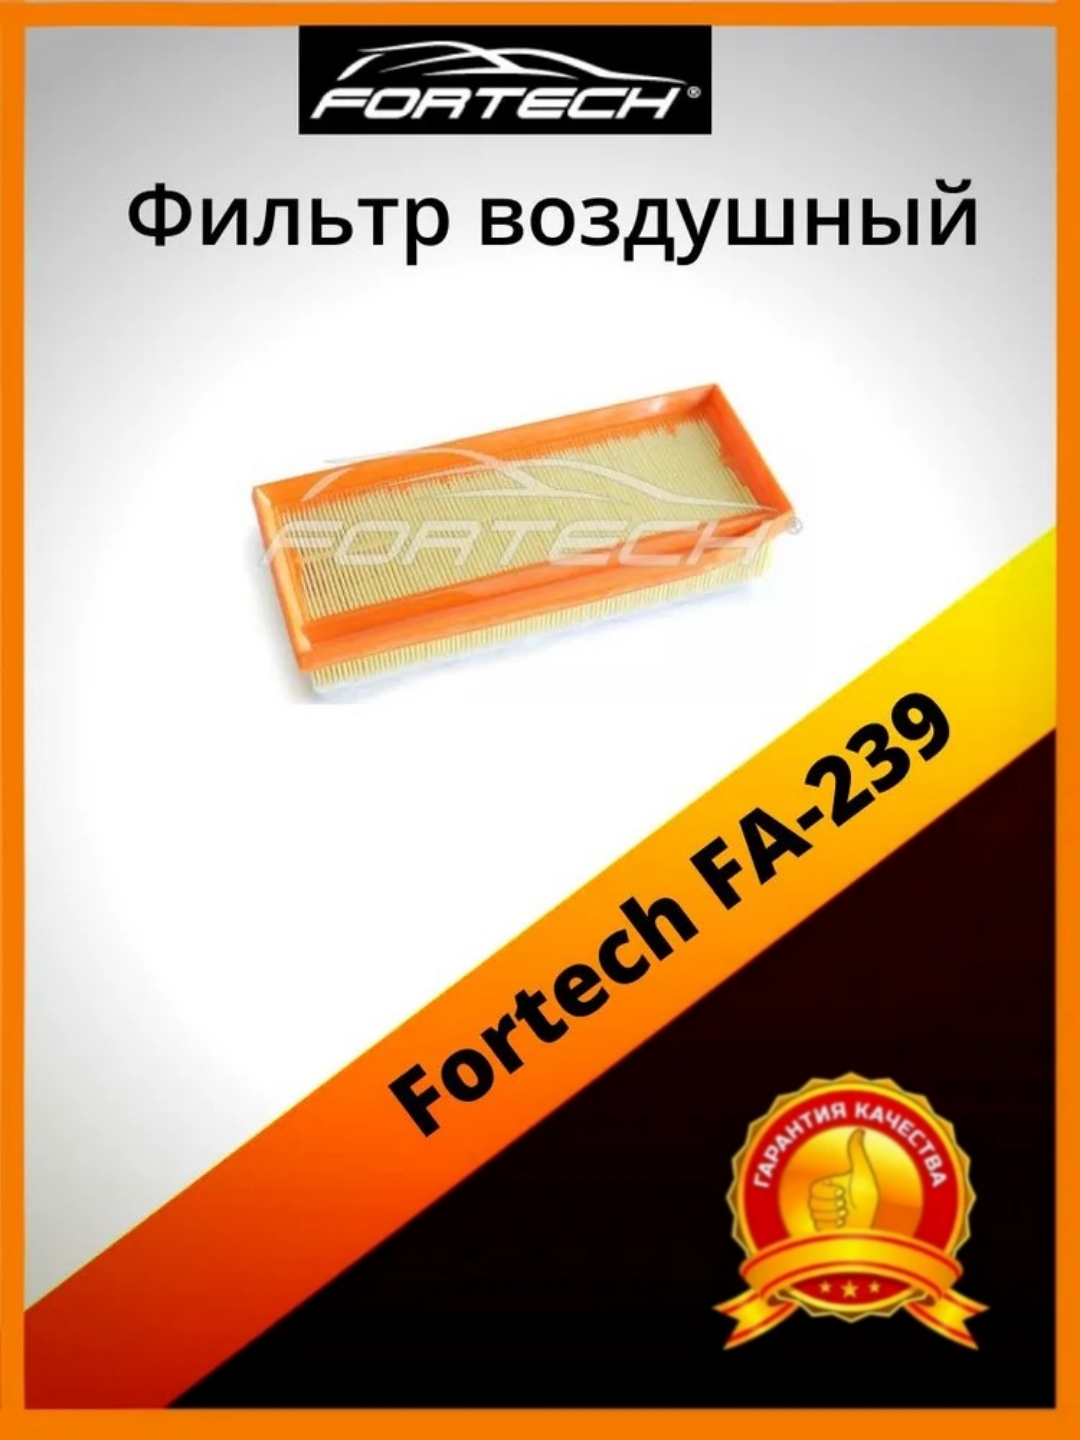 Фильтр воздушный Fortech FA-239